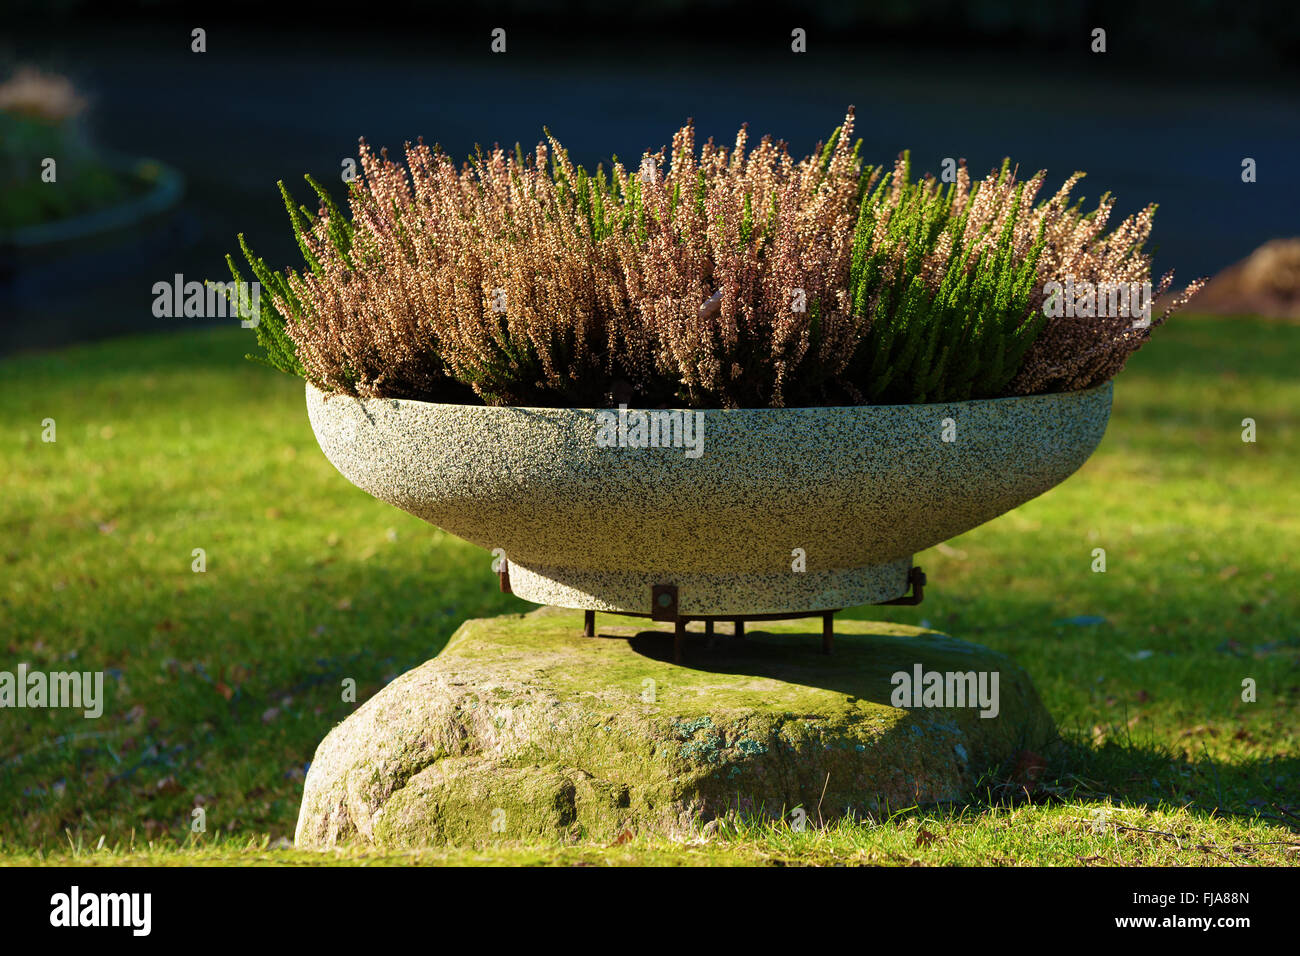 Heidekraut (Calluna Vulgaris) in einer erhöhten Blumentopf auf einem Granitblock Stein gepflanzt. Stockfoto